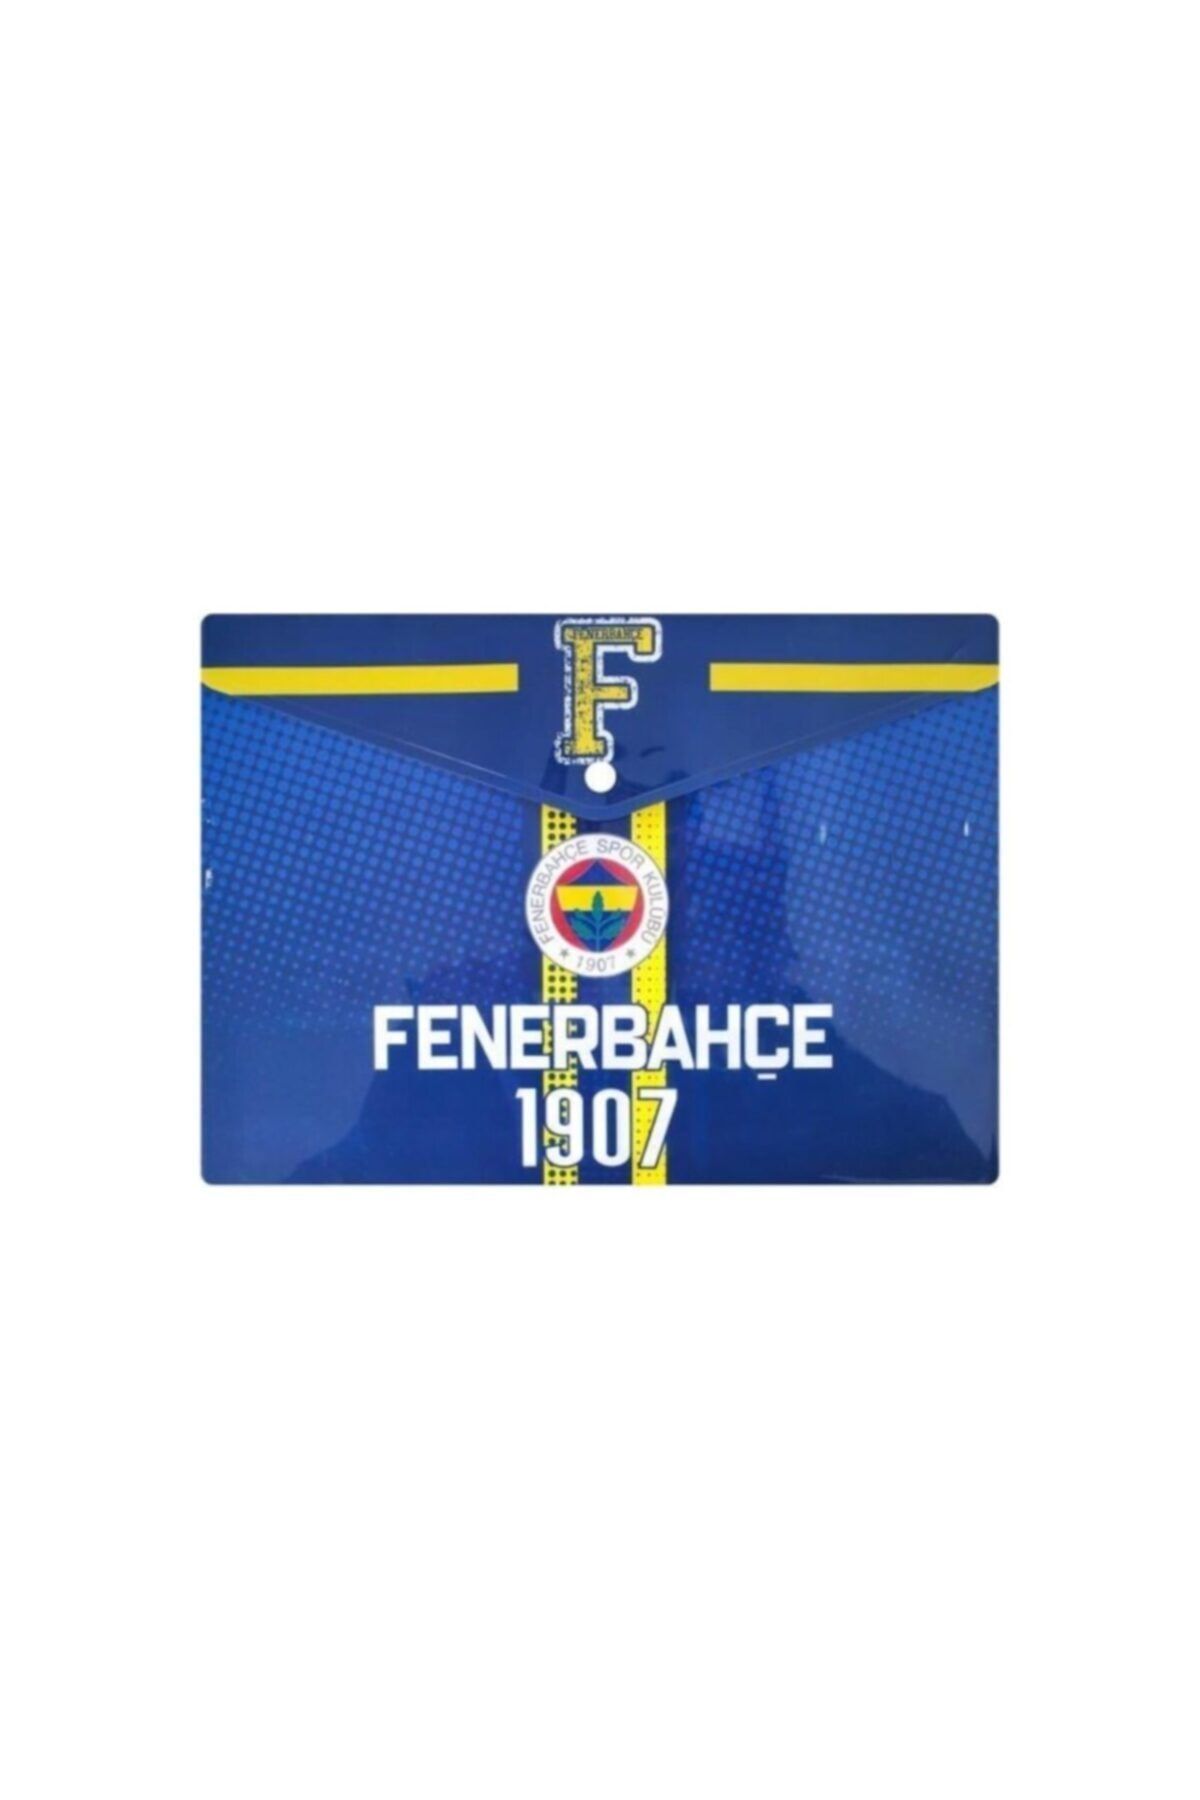 Fenerbahçe Fenerbahçe Çıtçıtlı Dosya